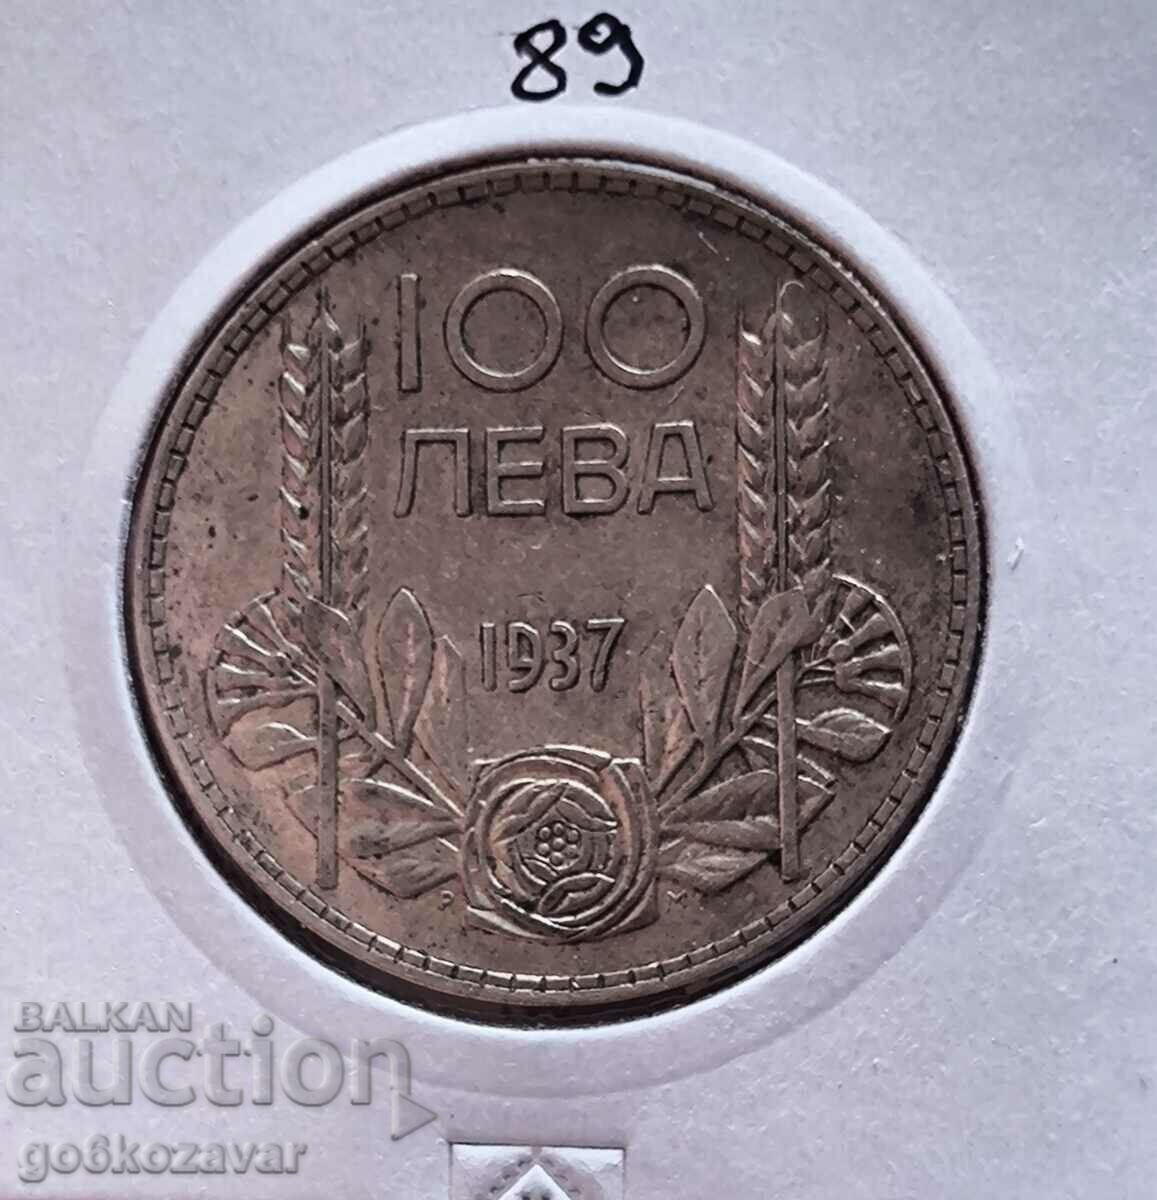 Βουλγαρία 100 BGN 1937 Silver Collection!